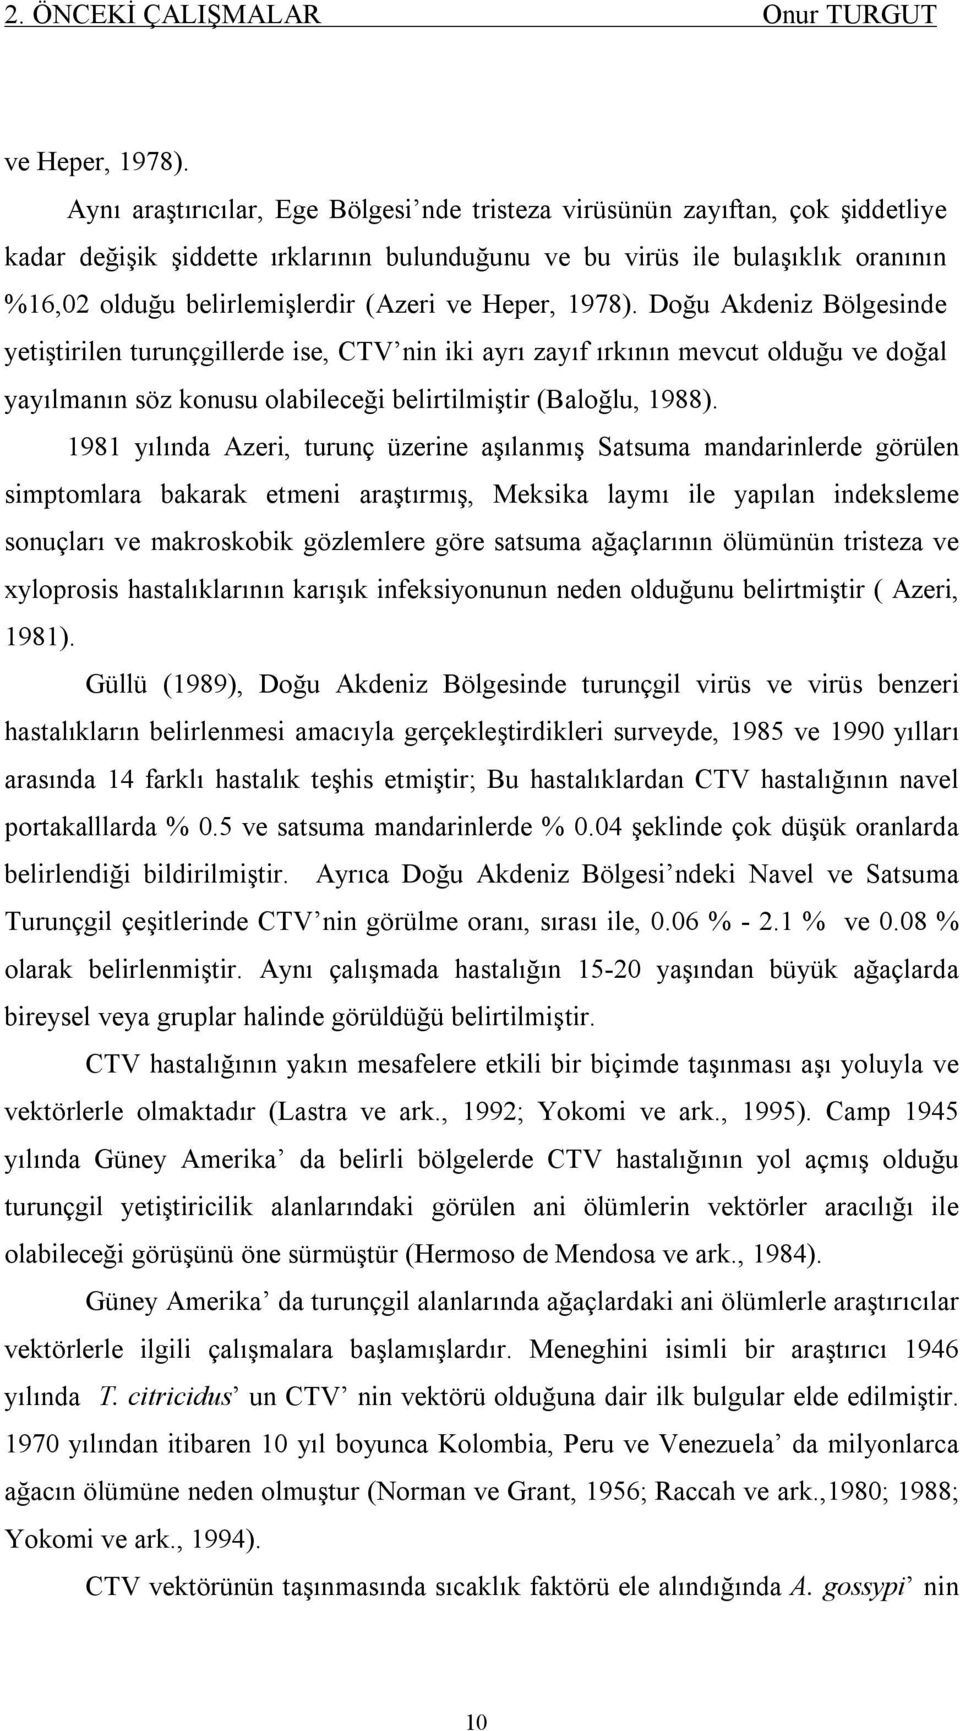 ve Heper, 1978). Doğu Akdeniz Bölgesinde yetiştirilen turunçgillerde ise, CTV nin iki ayrı zayıf ırkının mevcut olduğu ve doğal yayılmanın söz konusu olabileceği belirtilmiştir (Baloğlu, 1988).